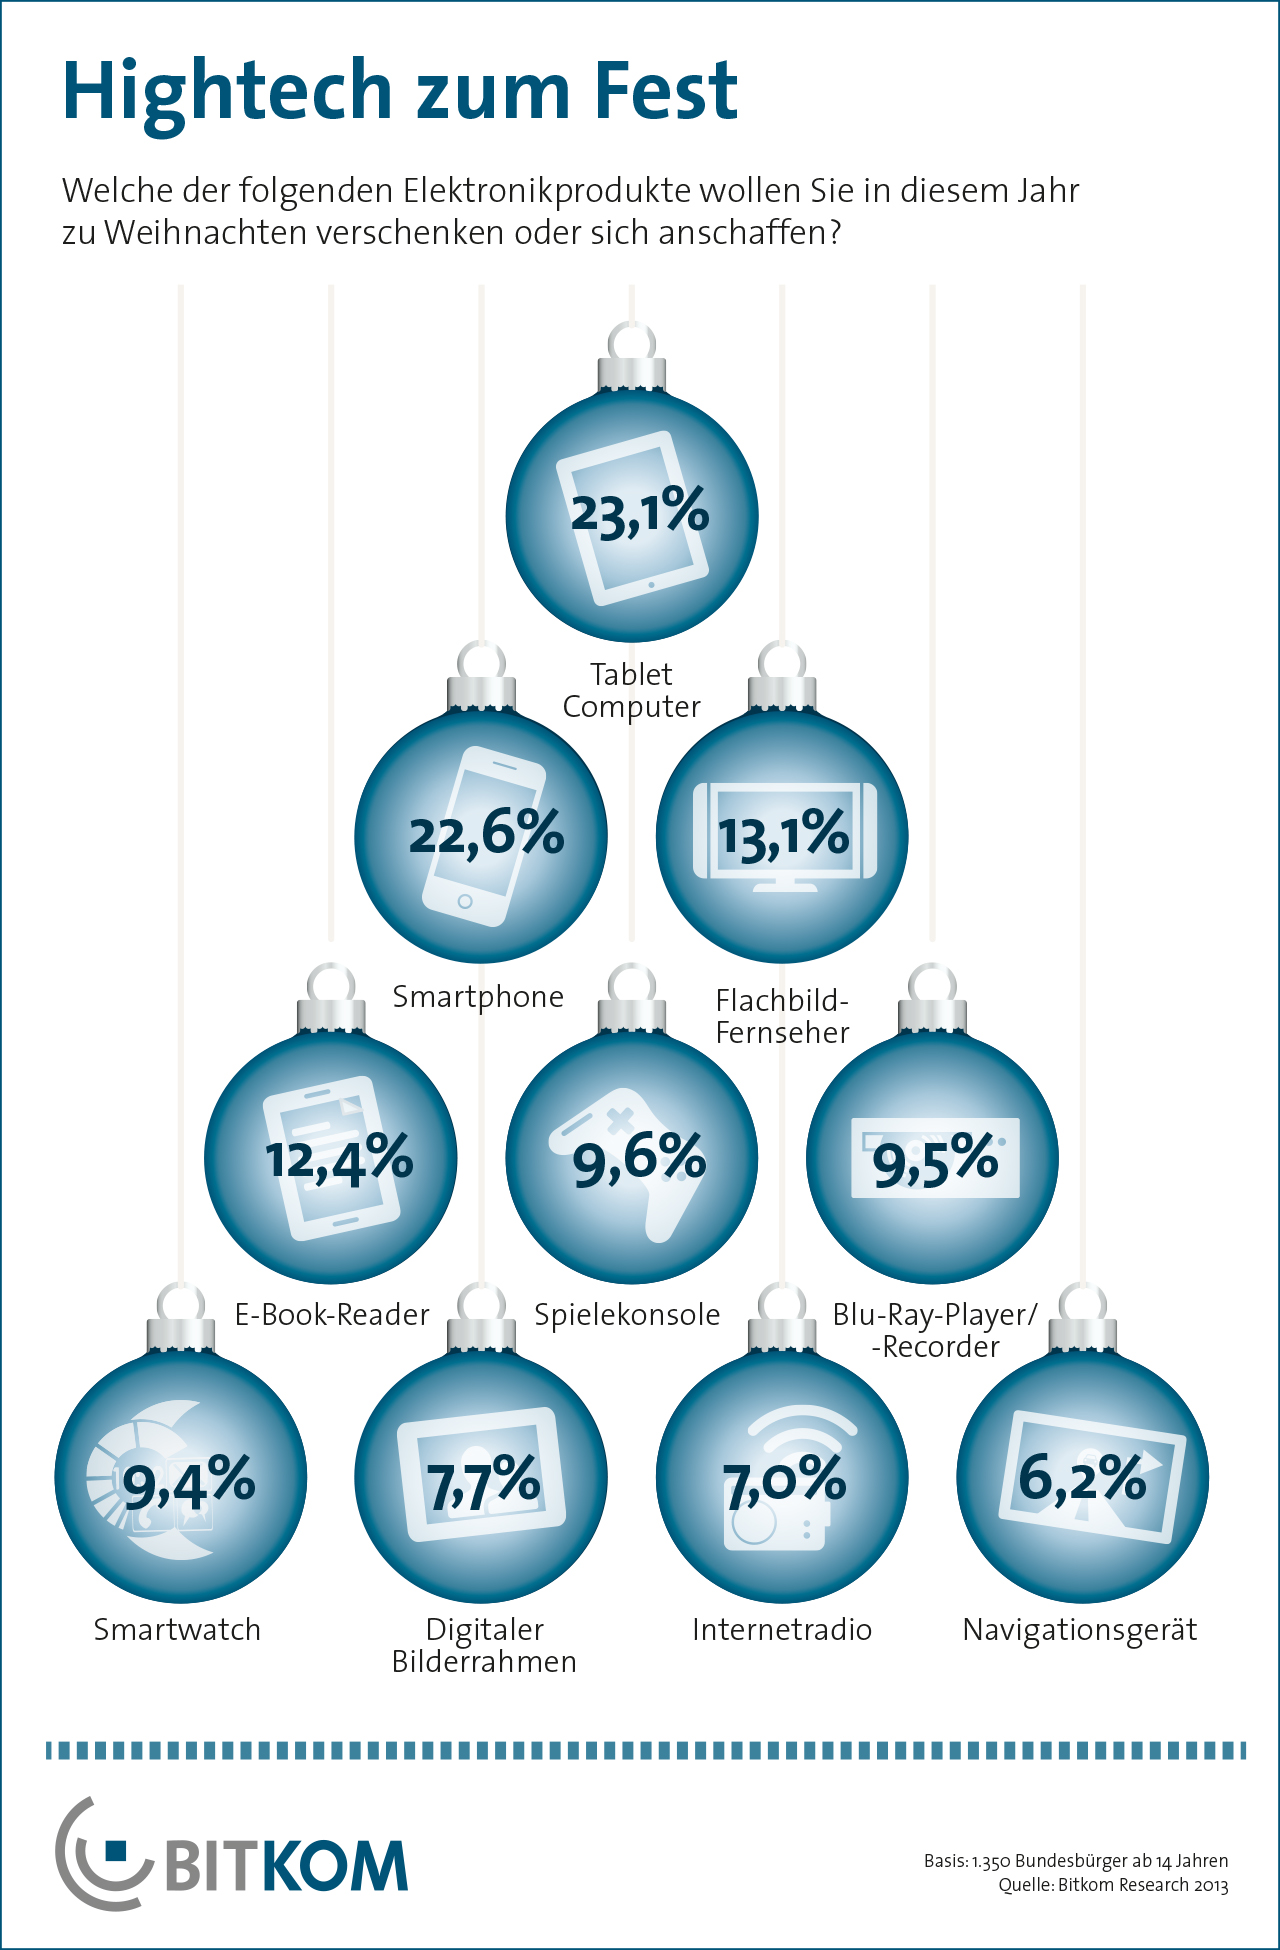 Viele Hightech-Weihnachtsgeschenke in den Top-10 der Wunschliste - Grafik BITKOM